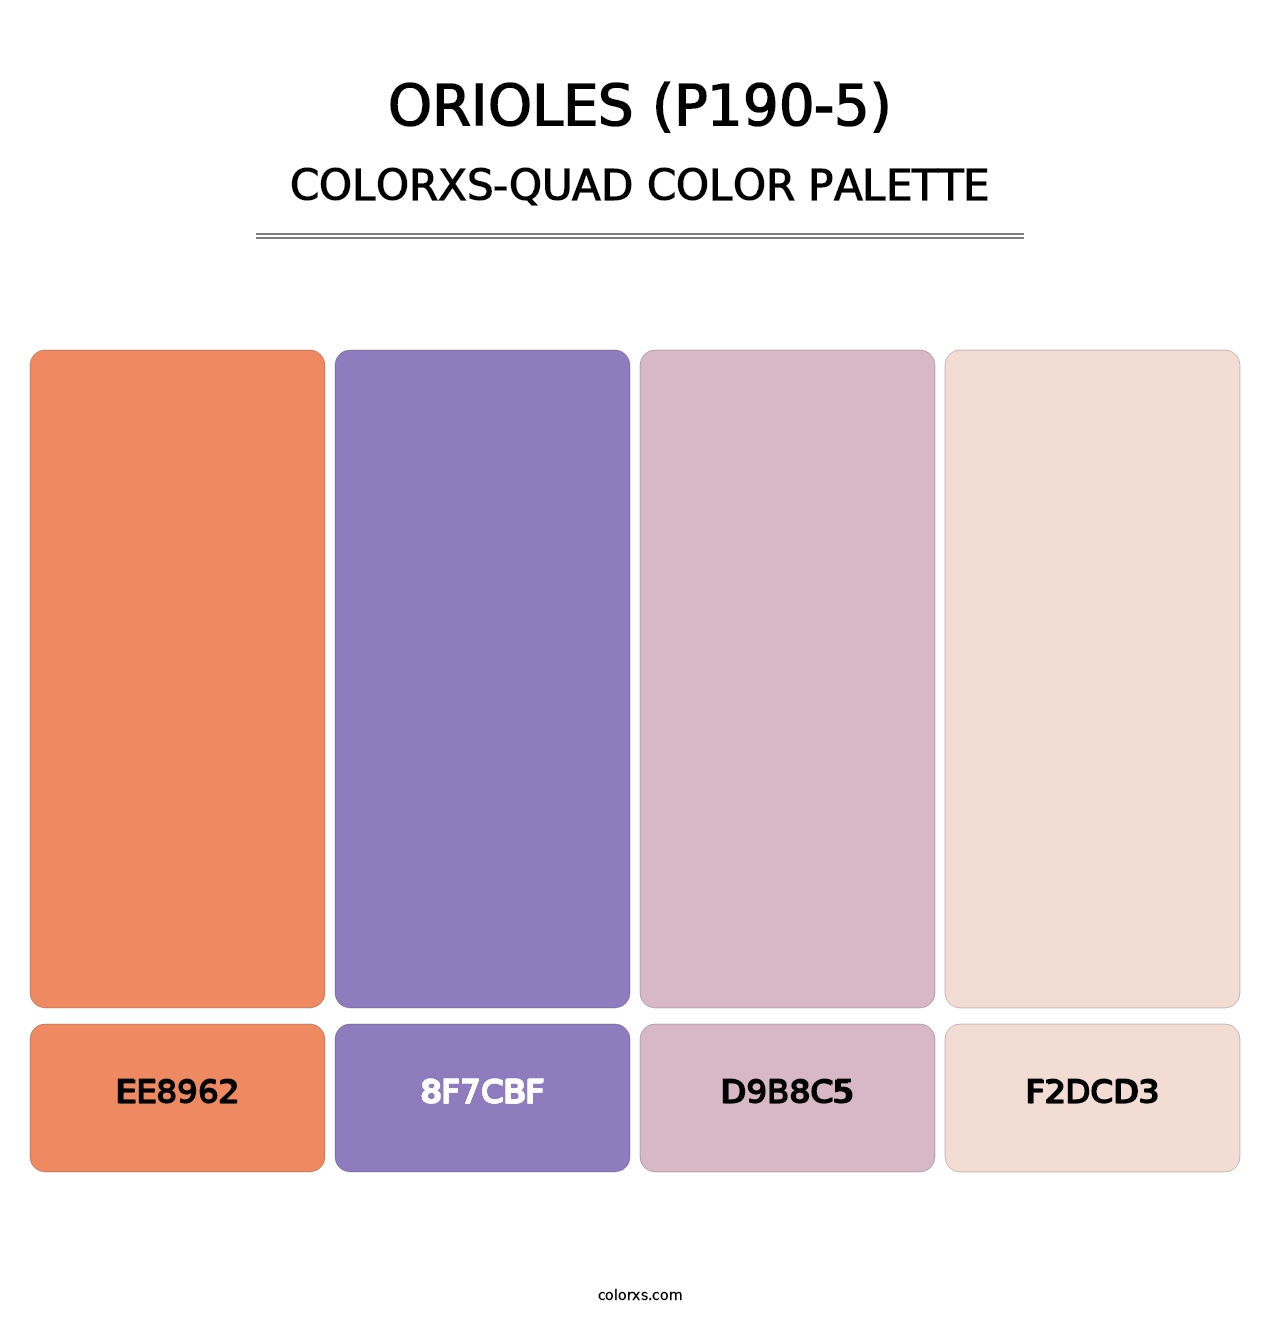 Orioles (P190-5) - Colorxs Quad Palette